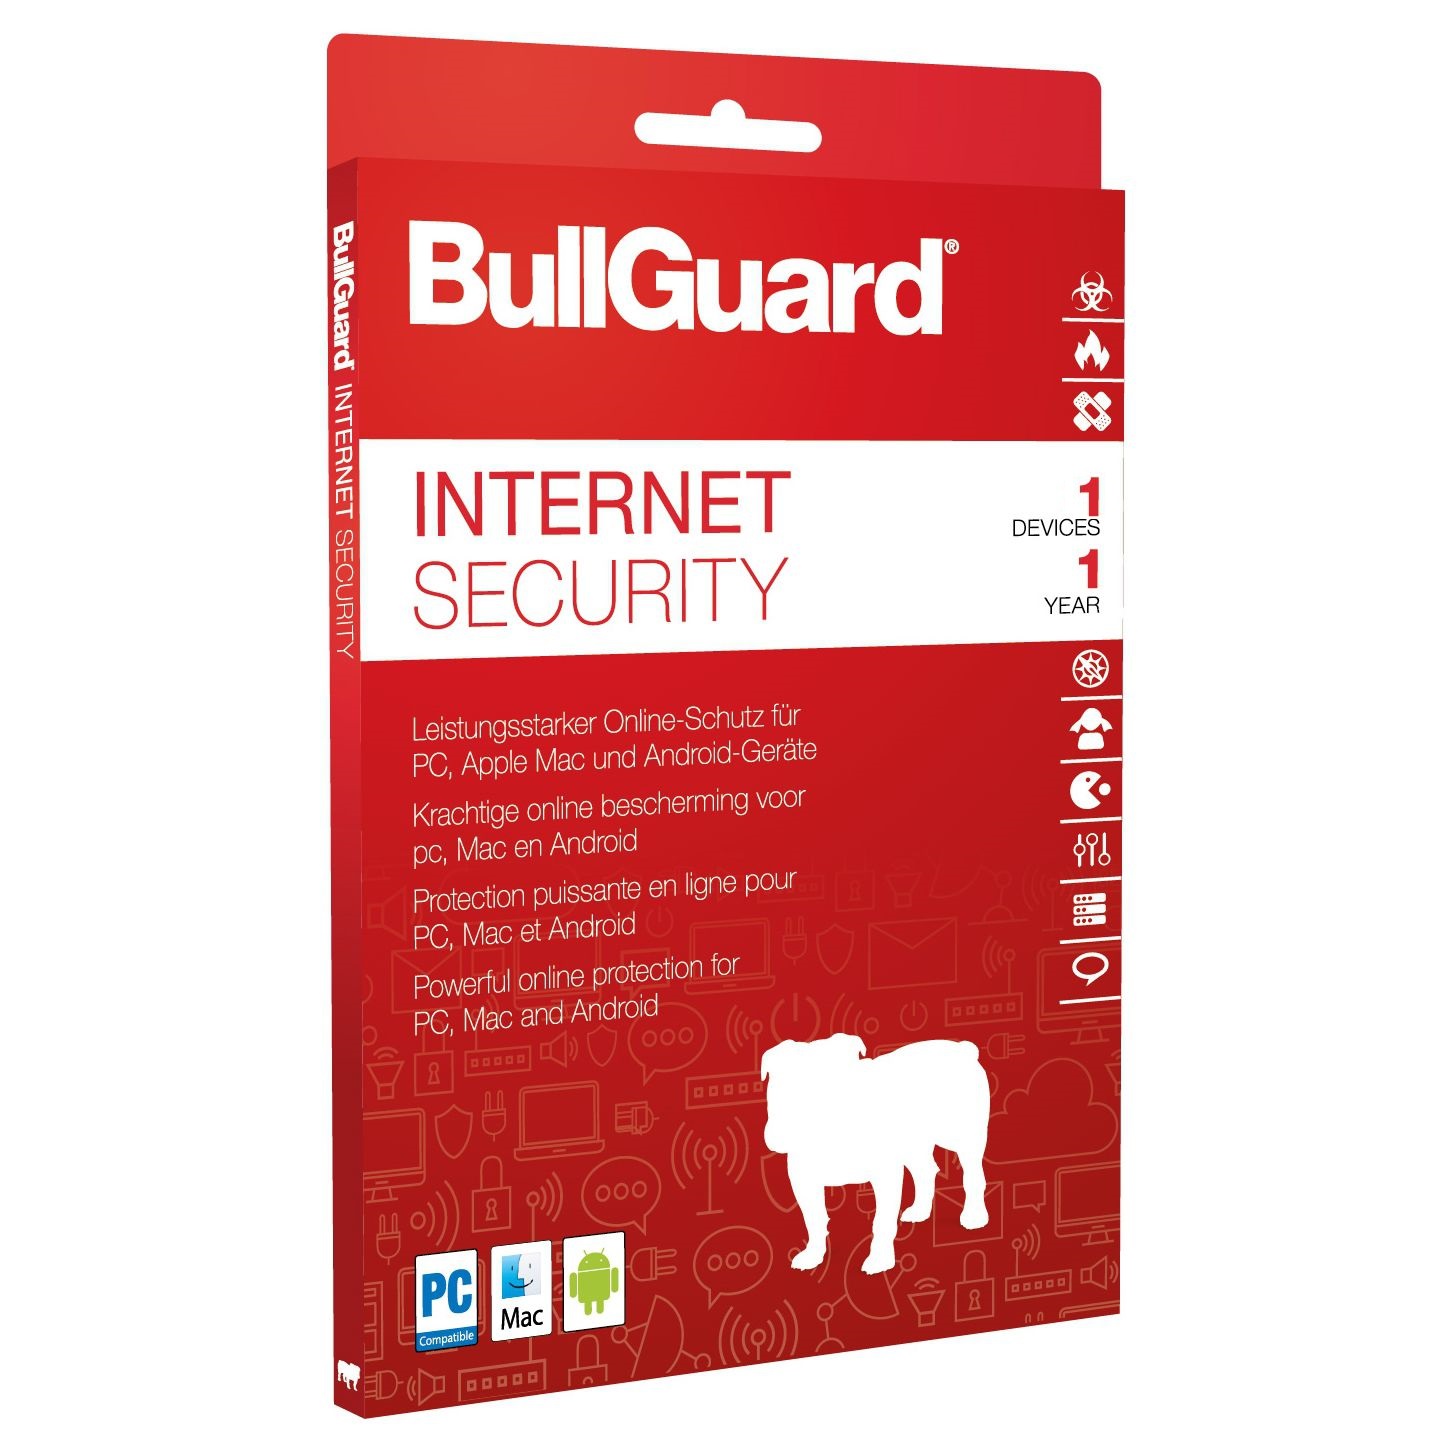 Bullguard Antivirus Download Free Trial